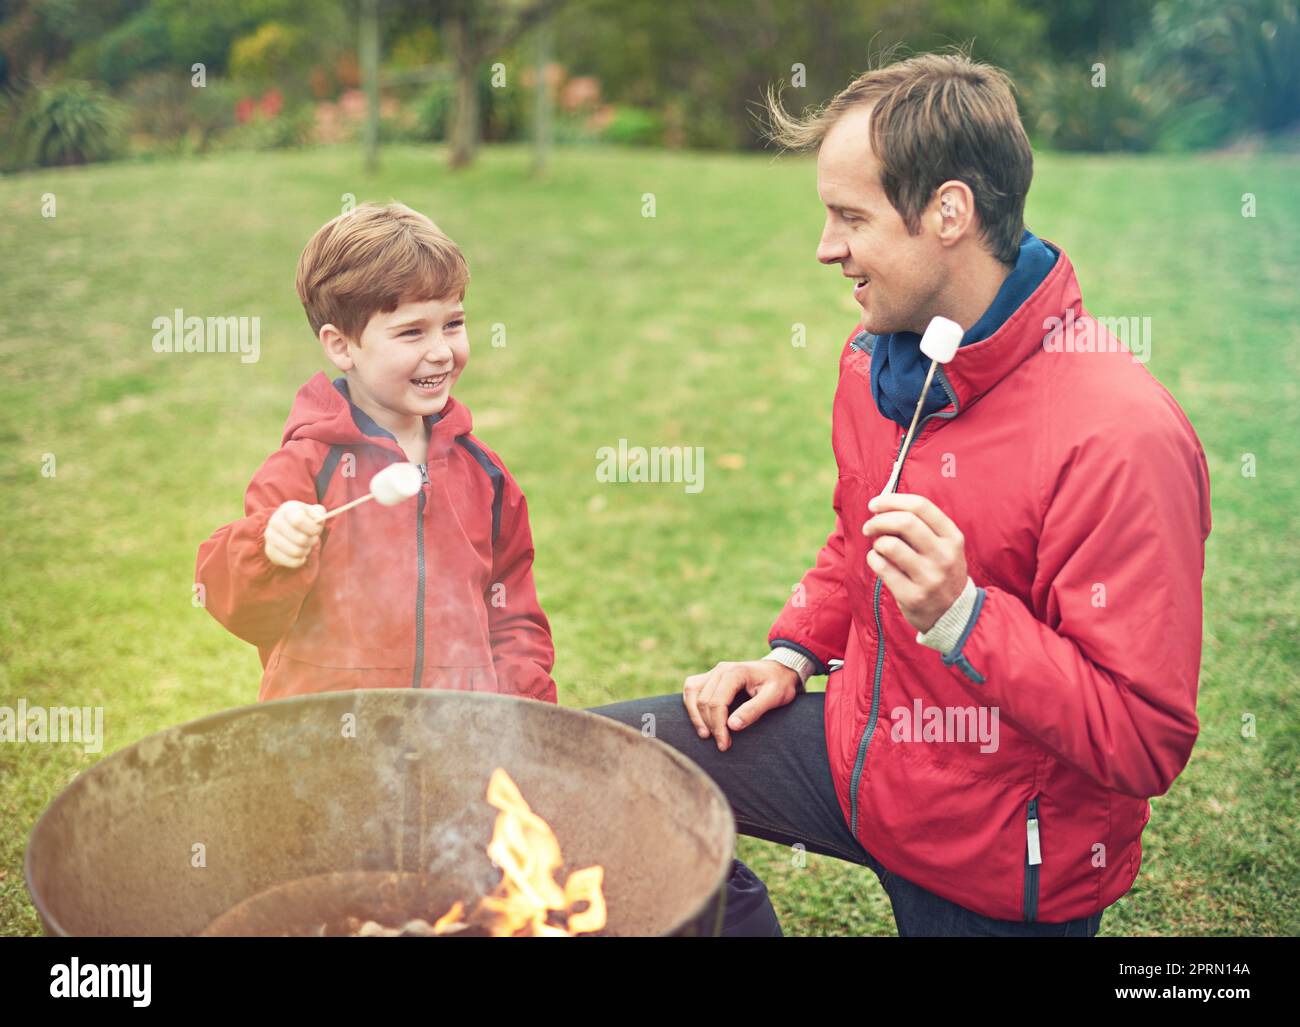 La migliore delizia dolce di sempre. Un padre e un figlio arrostire marshmallows sopra un fuoco. Foto Stock